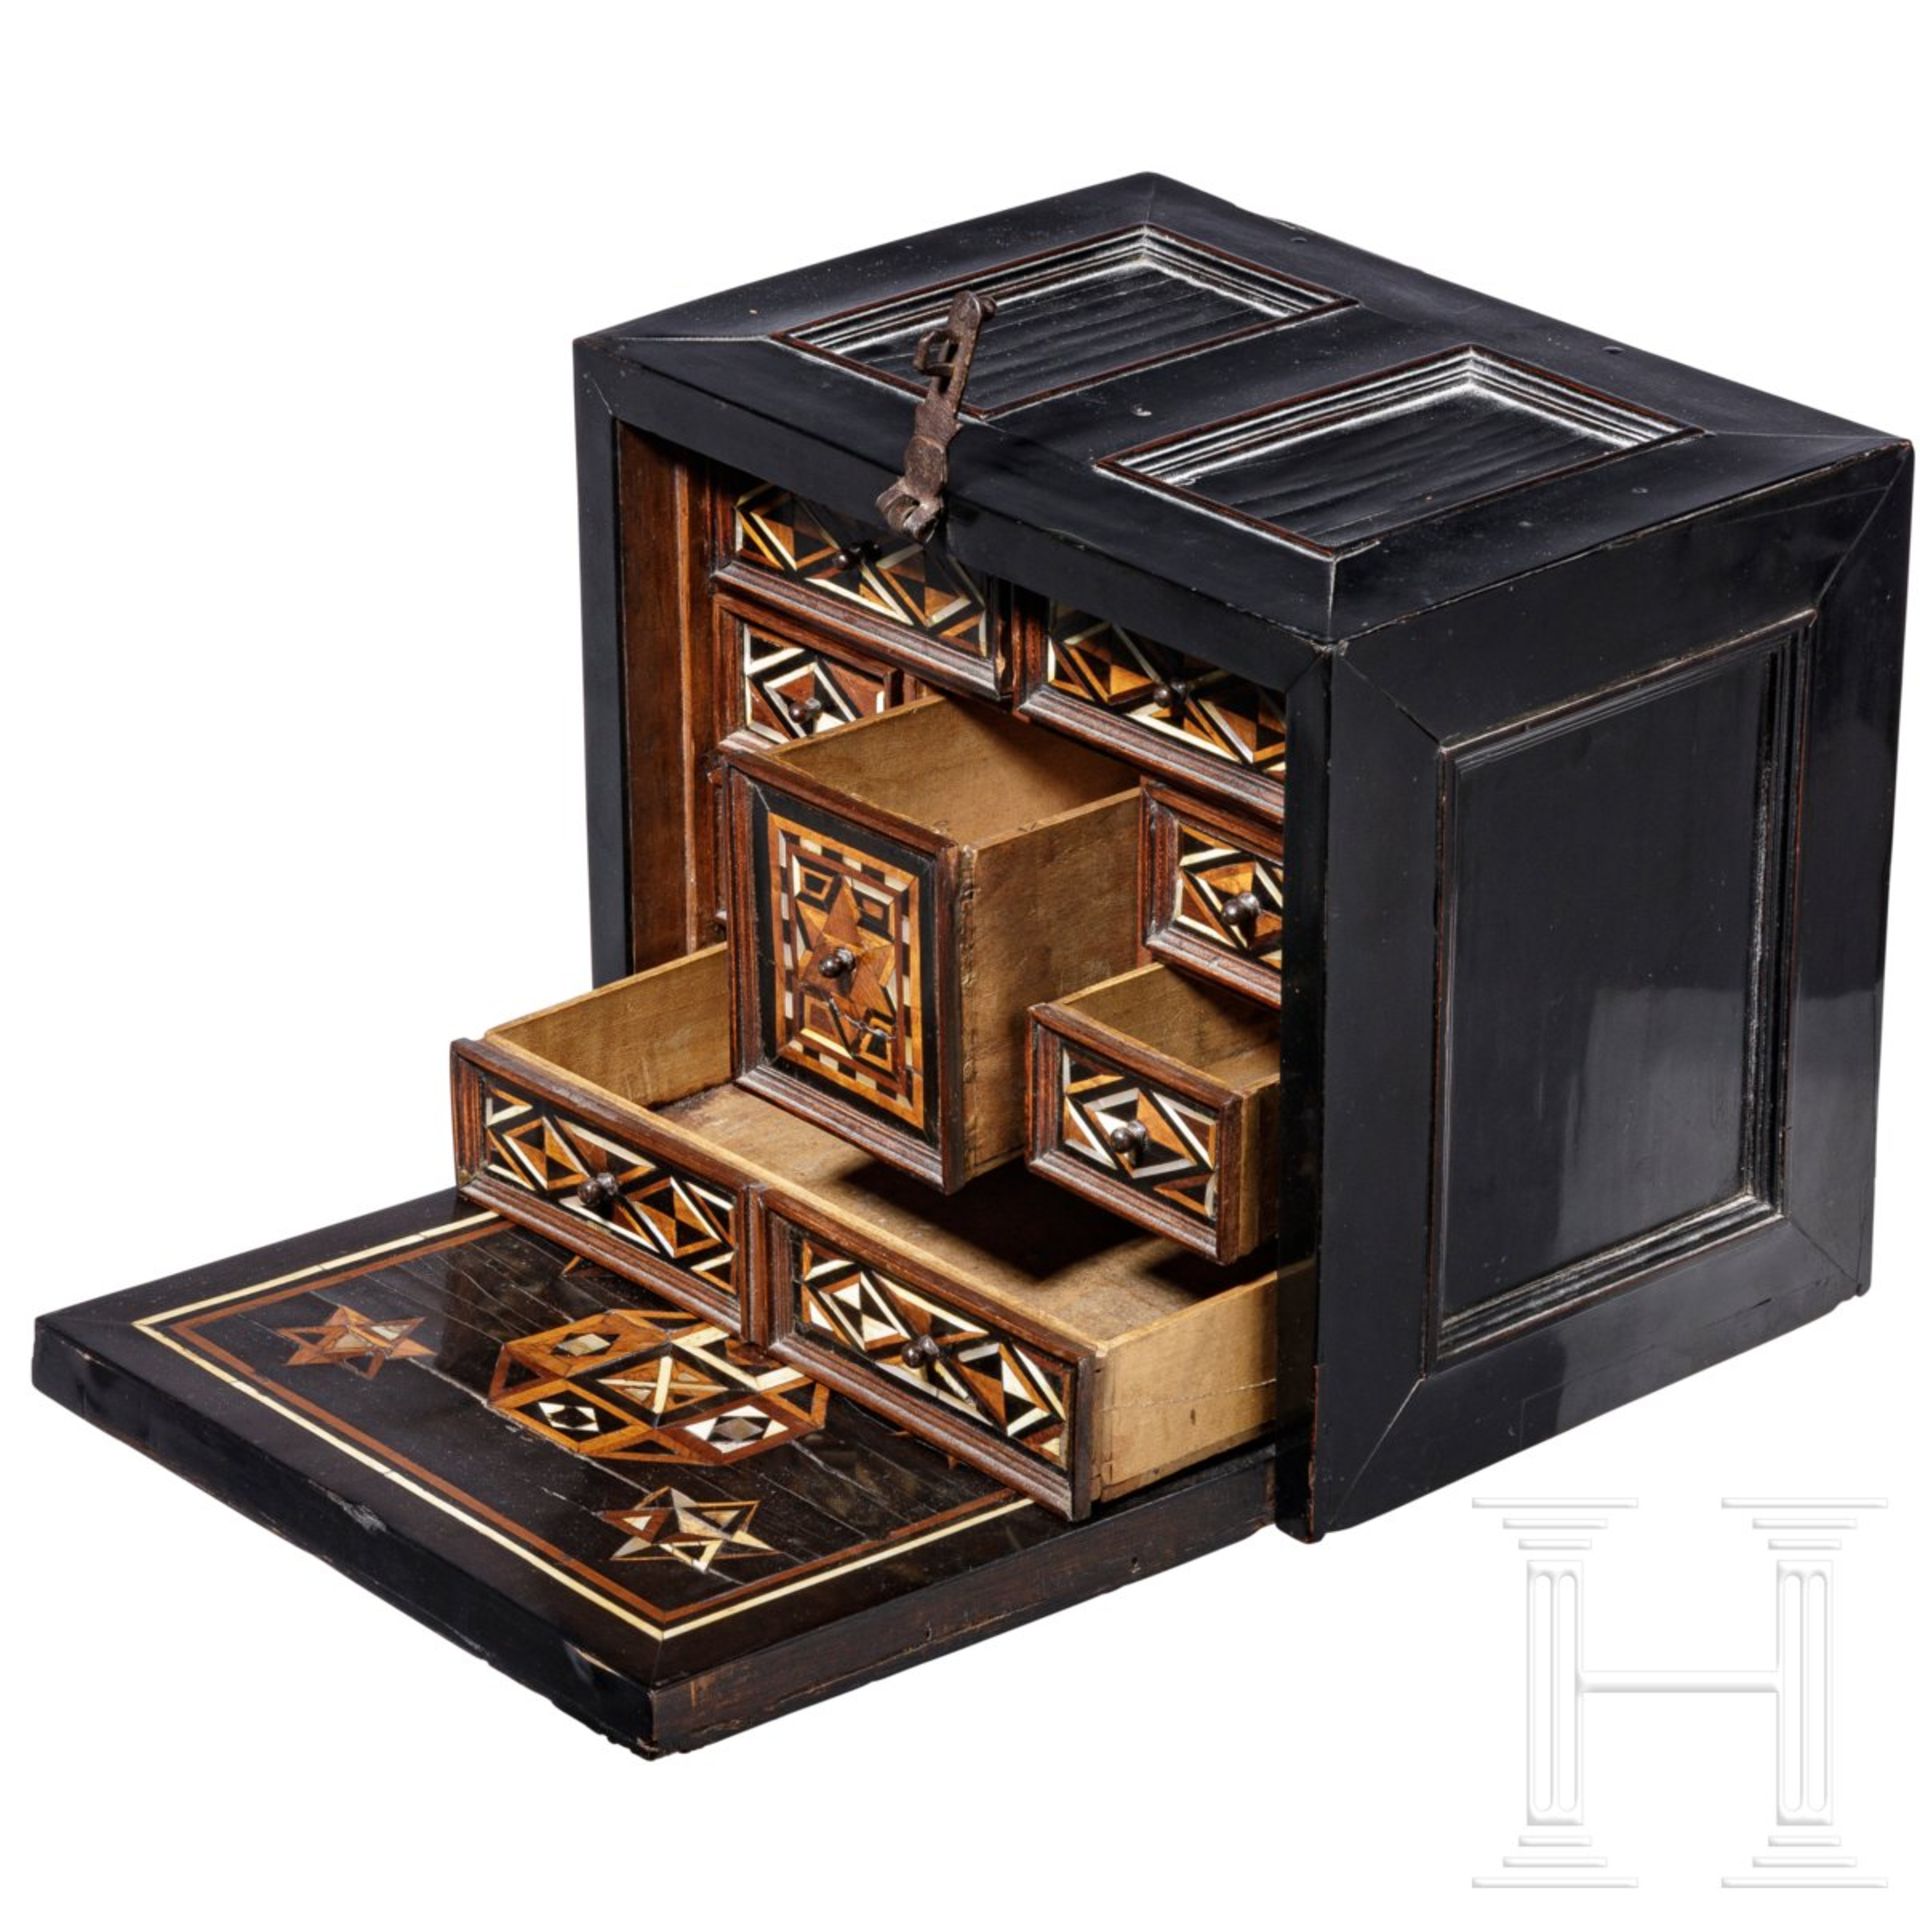 Ebenholzfurniertes Kabinettkästchen mit geometrischem Dekor, Nürnberg, um 1600 - Bild 2 aus 7